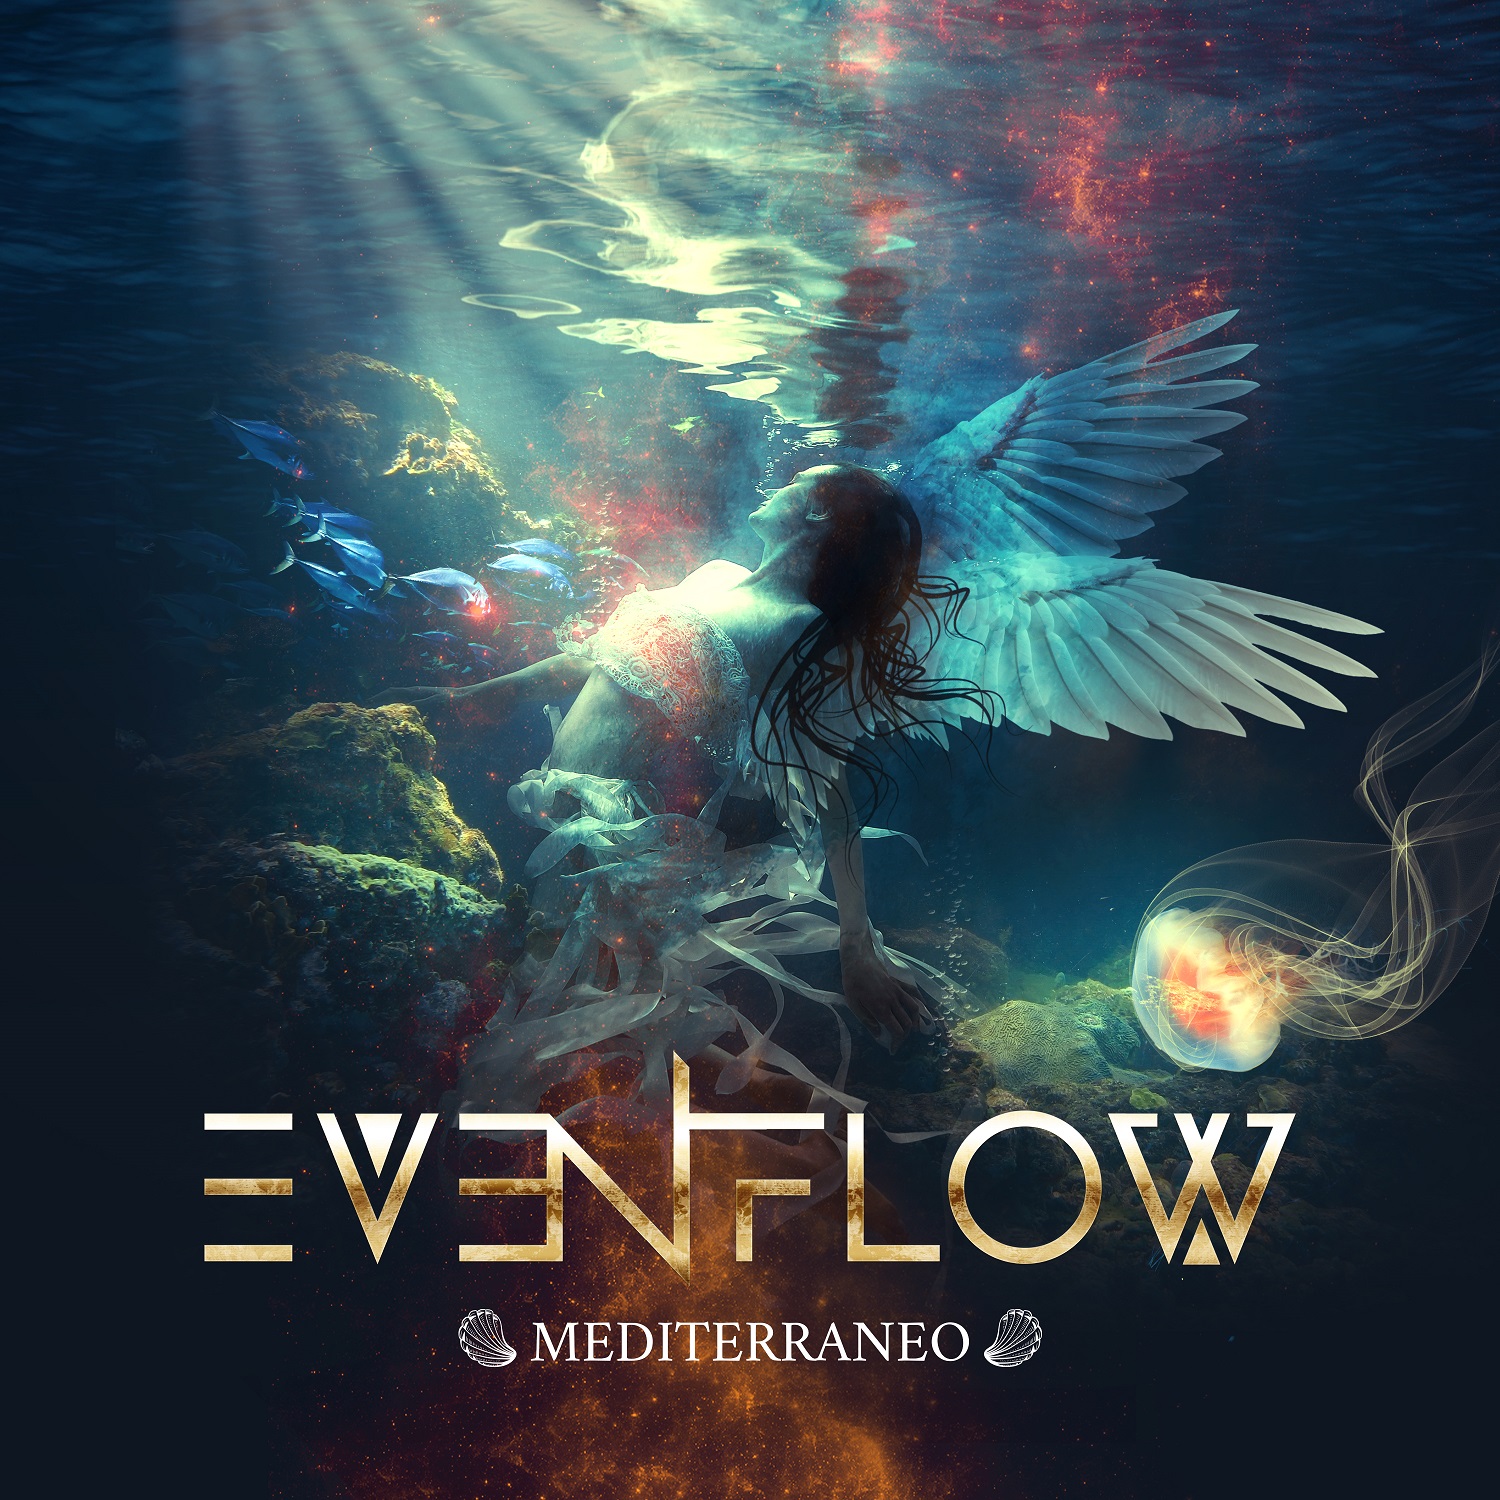 Evenflow – "Mediterraneo" EP